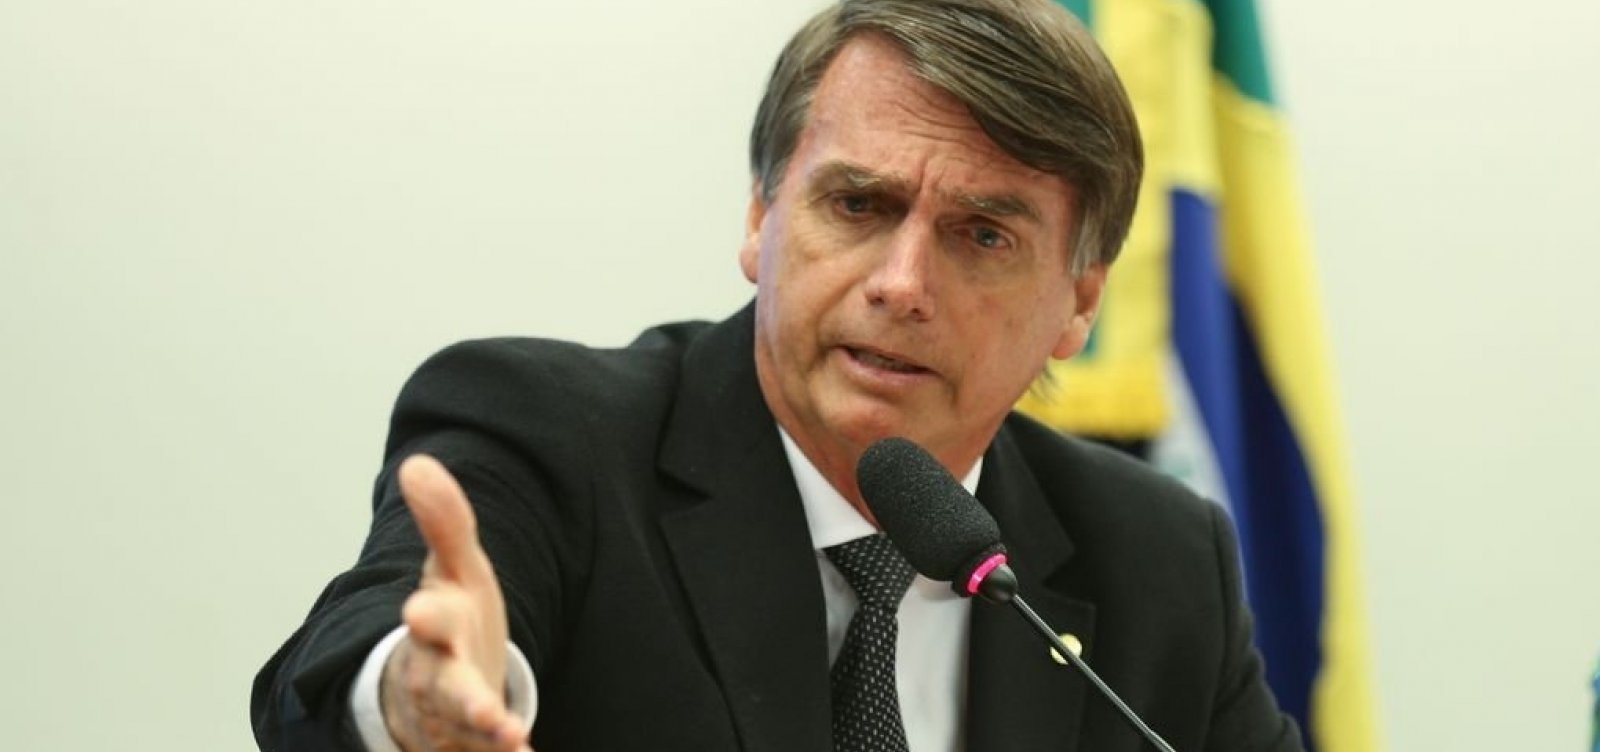 Astronauta e príncipe viram opções de vice para Bolsonaro